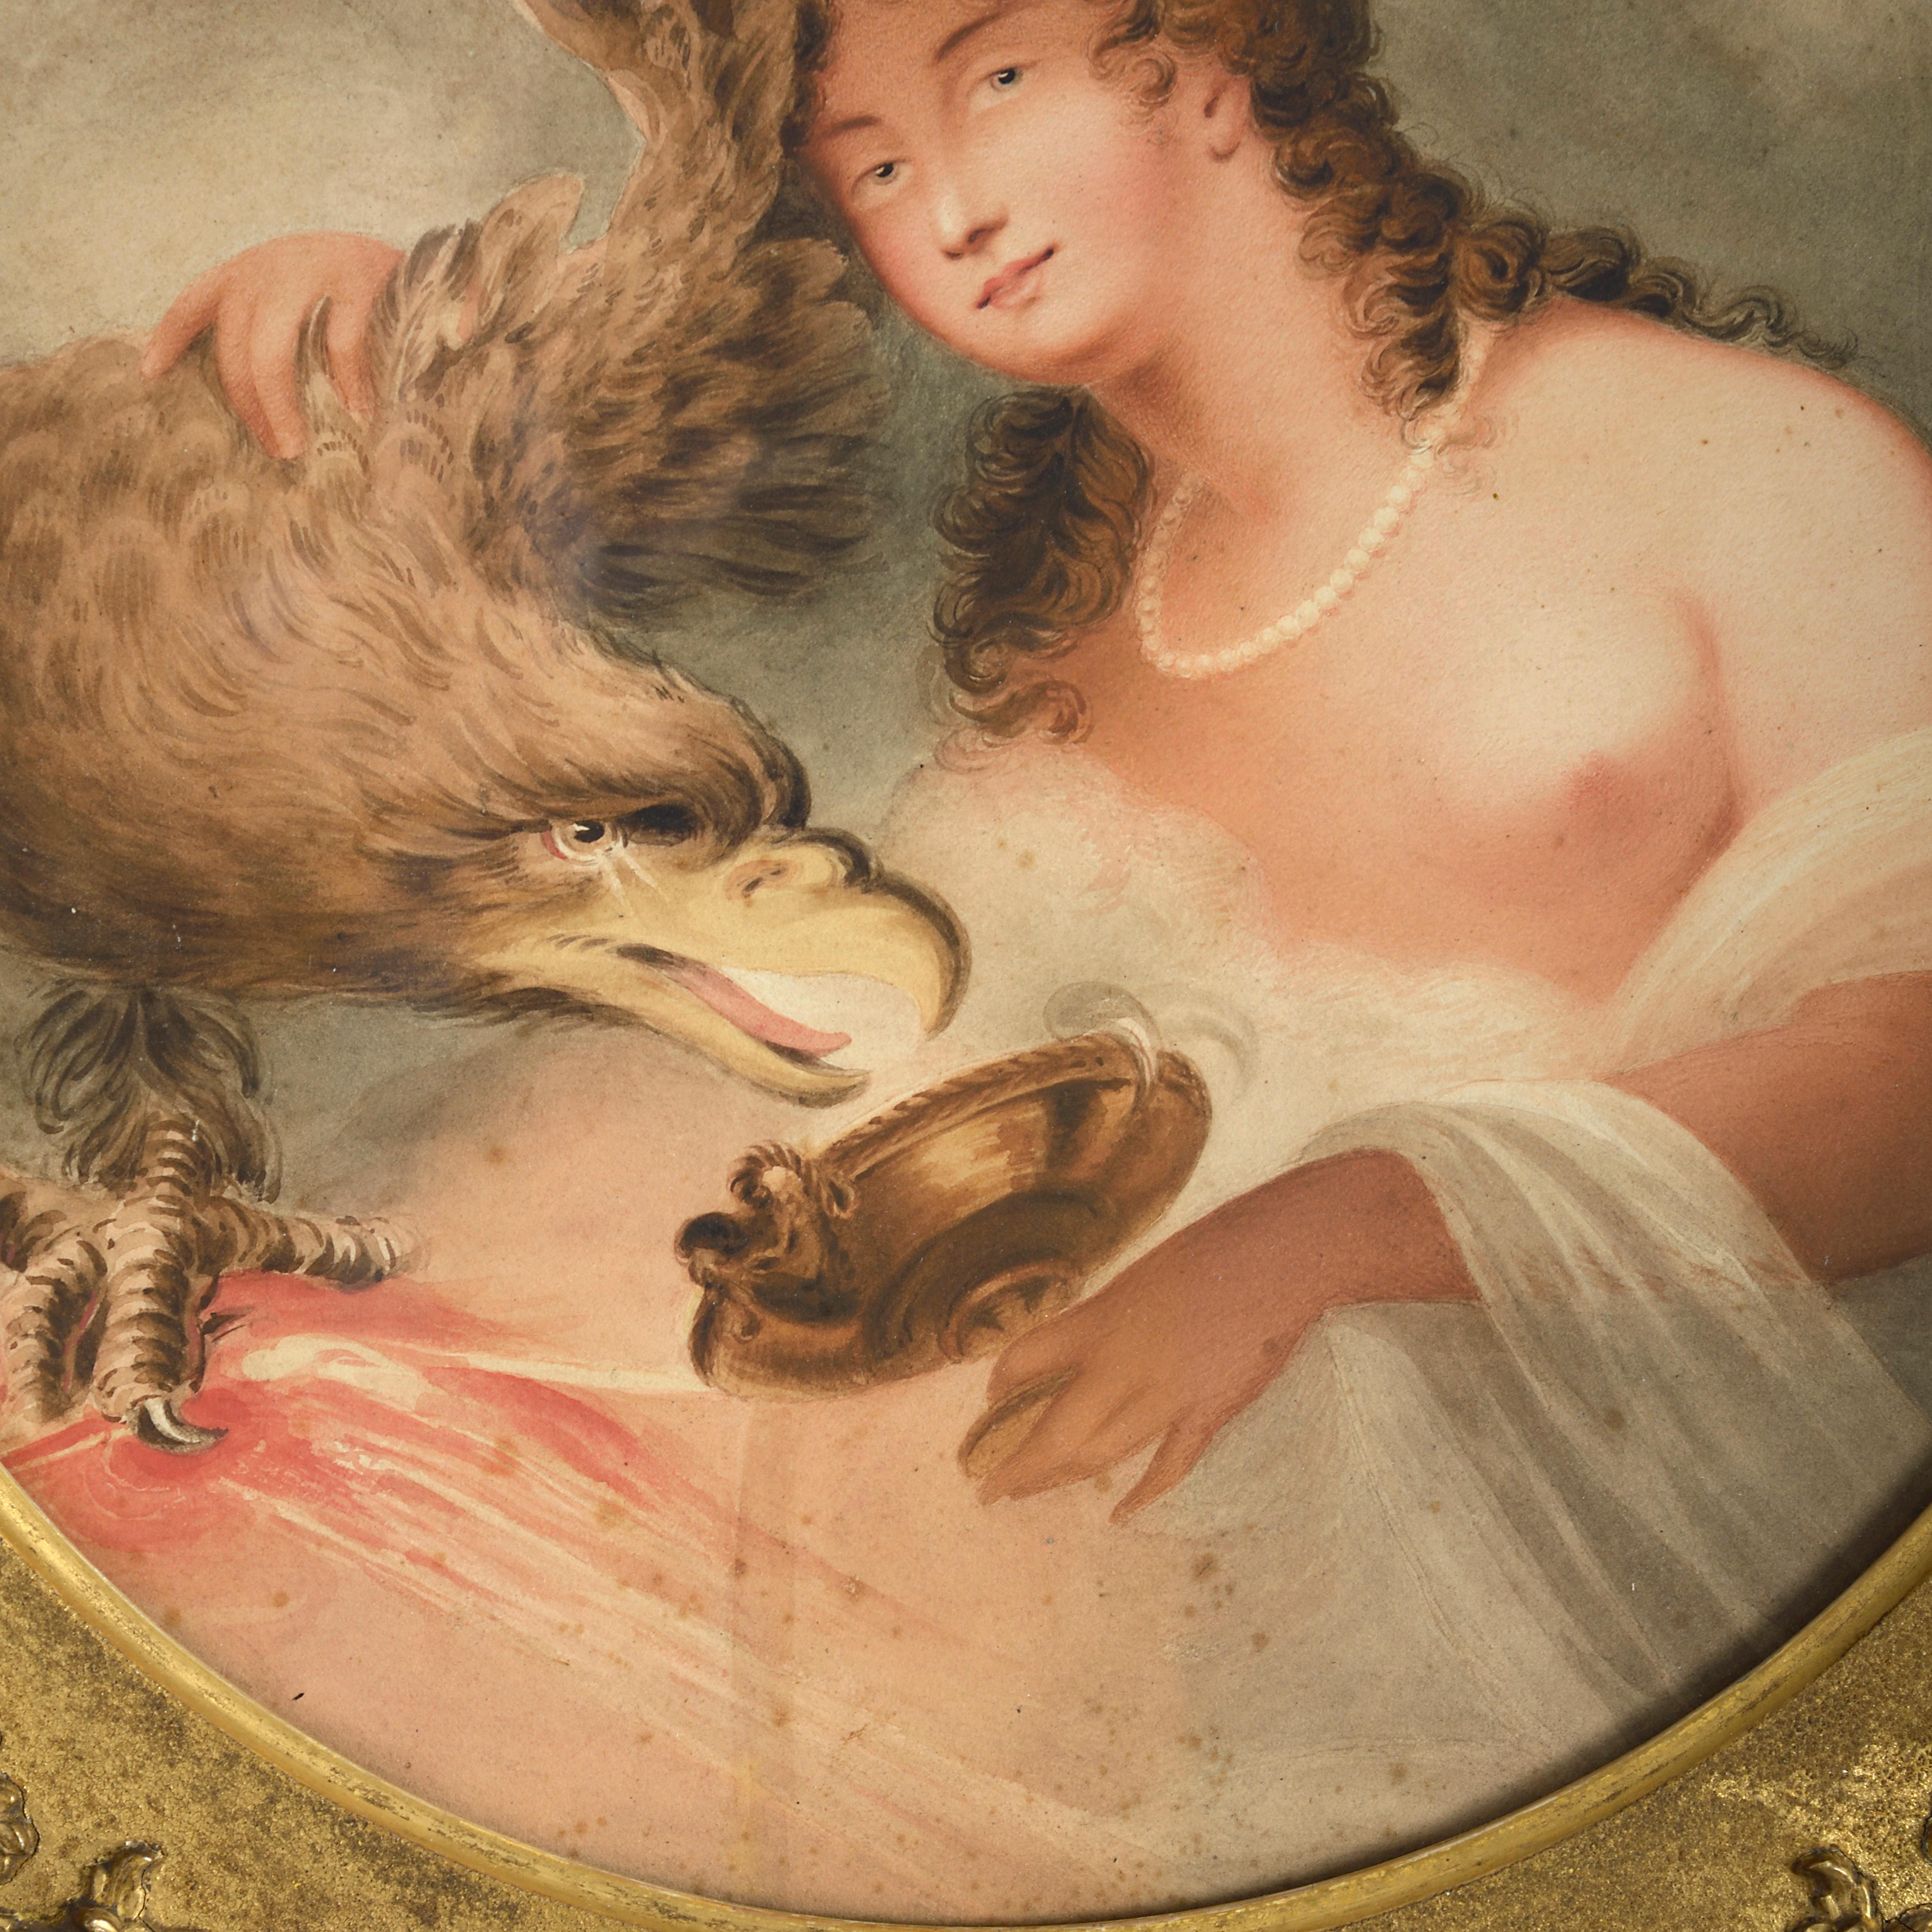 Un beau pastel de la période Régence du début du XIXe siècle, représentant la déesse Hébé.

Pastel sur papier, dans un cadre rectangulaire d'époque à montage circulaire.

Dans la mythologie grecque, Hébé était la déesse de la jeunesse, fille de Zeus